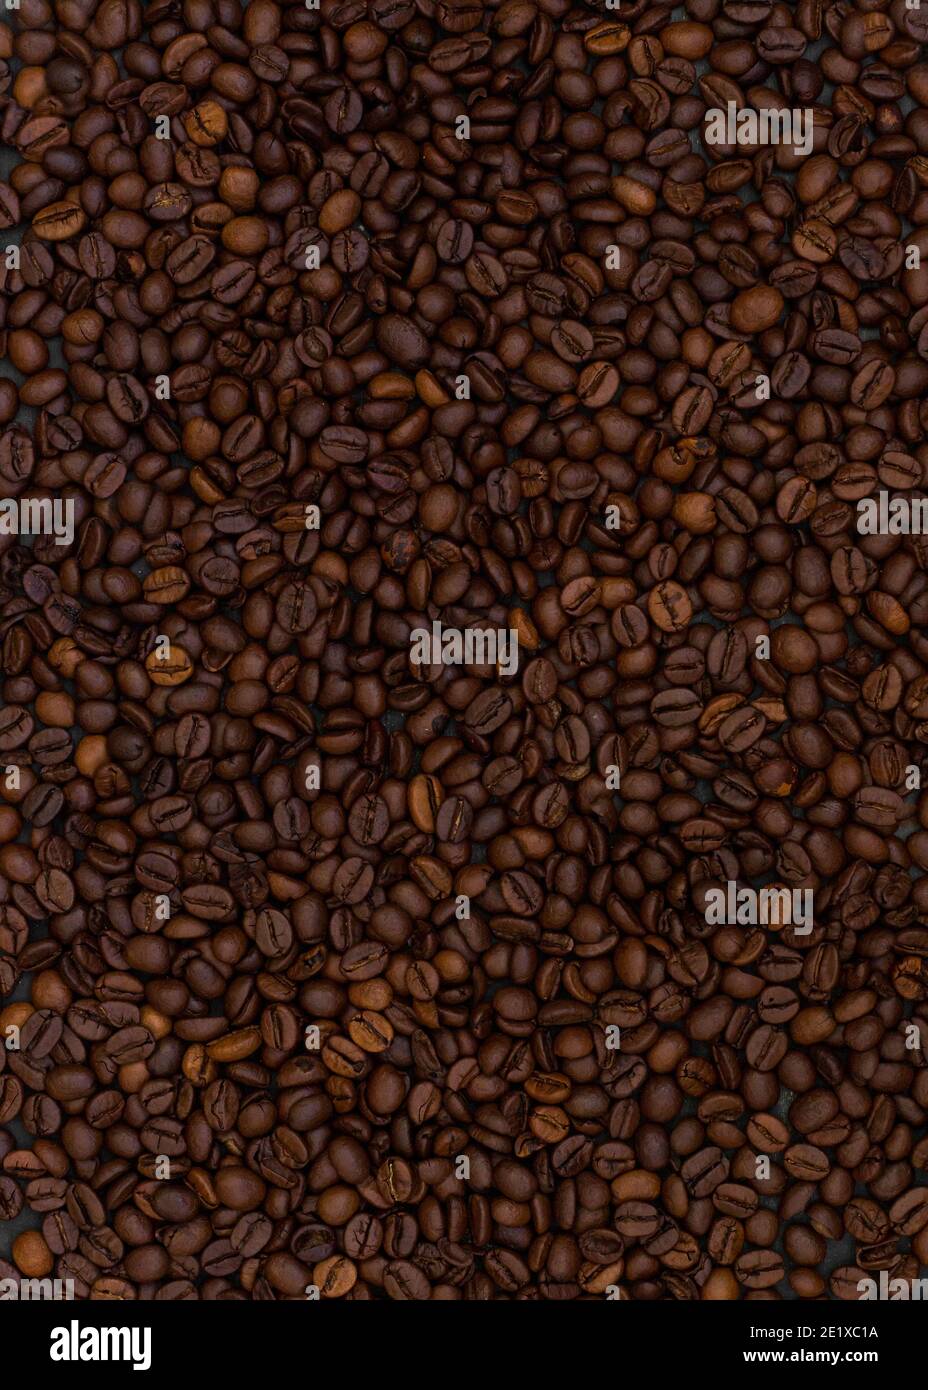 Incredibile sfondo di caffè torrefatto. Immagine verticale. Foto Stock